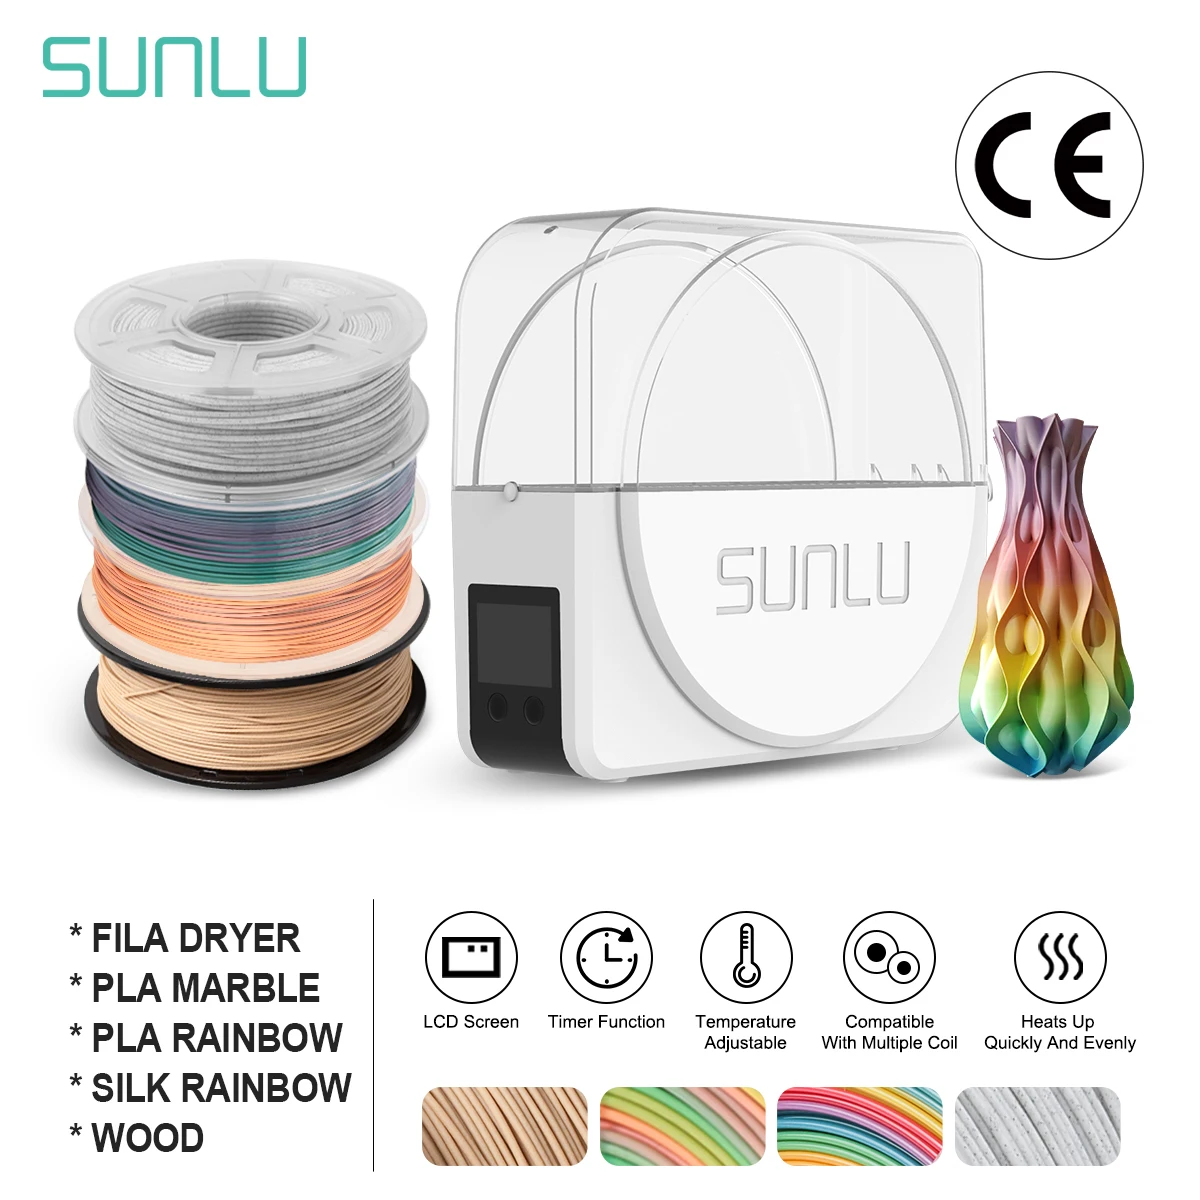 Нить для сушки SUNLU S1, наполнитель для 3D принтера, 4 рулона PLA Marbel/Rowbal/WOOD/ SILK